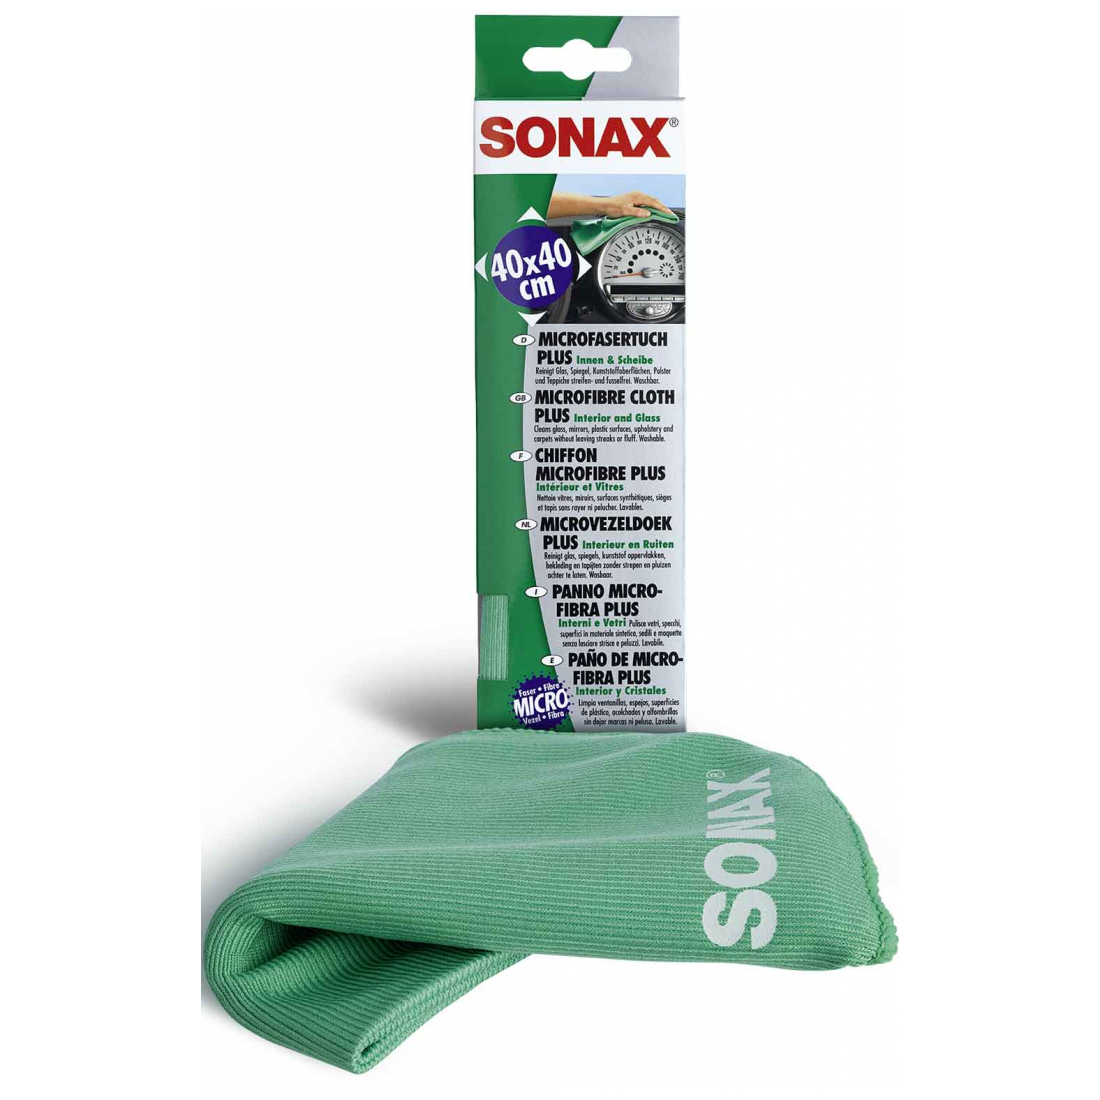 SONAX MicrofaserTuch PLUS Innen & Scheibe